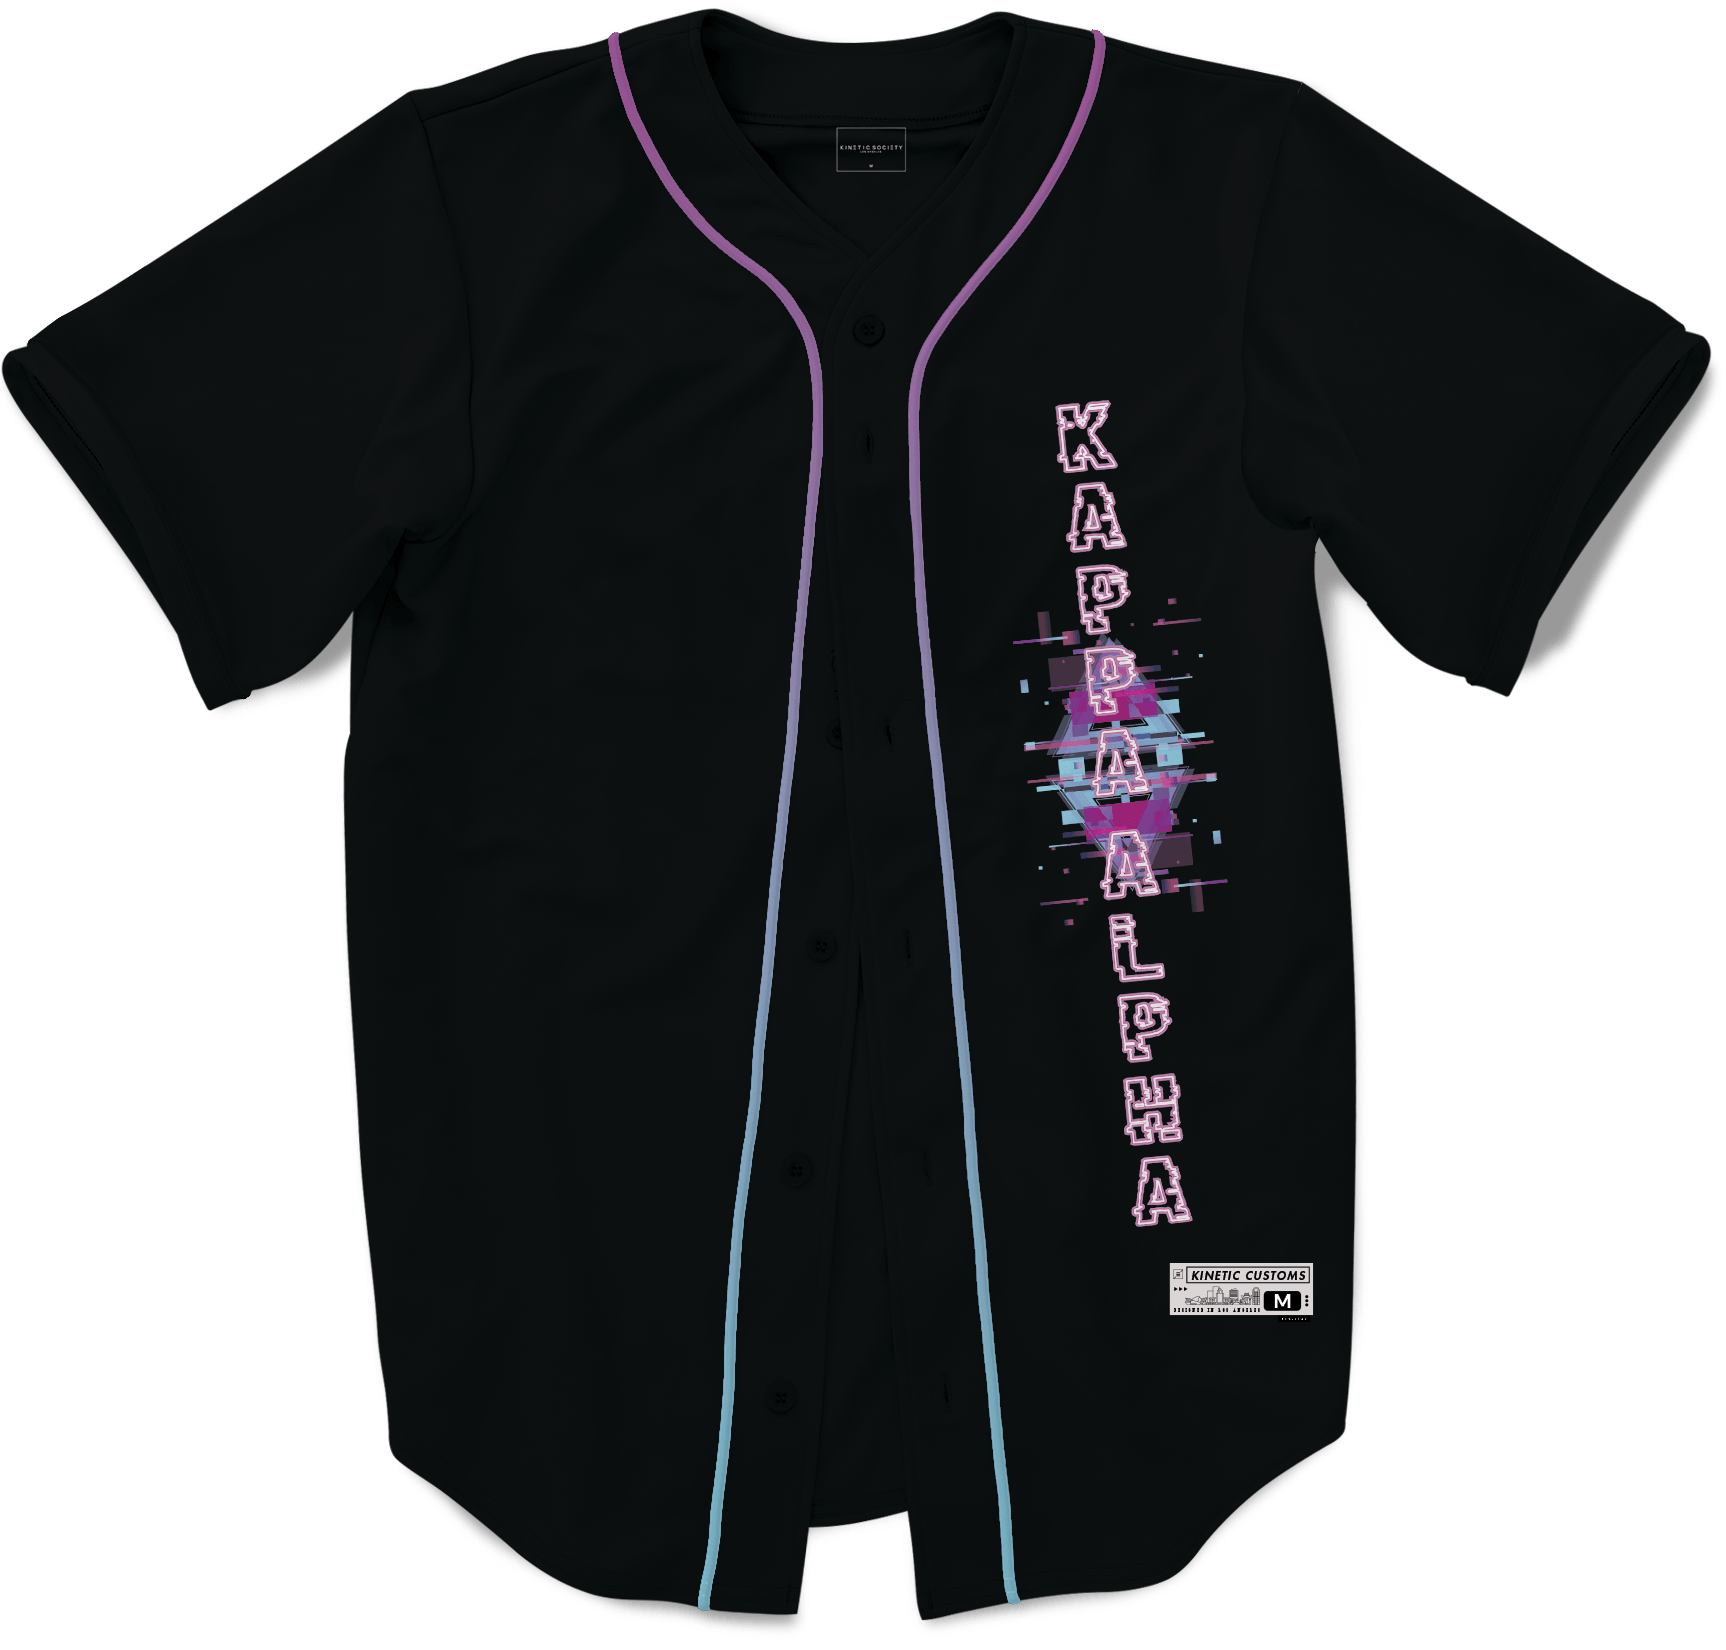 Kappa Alpha Order - Glitched Vision Baseball Jersey Premium Baseball Kinetic Society LLC 